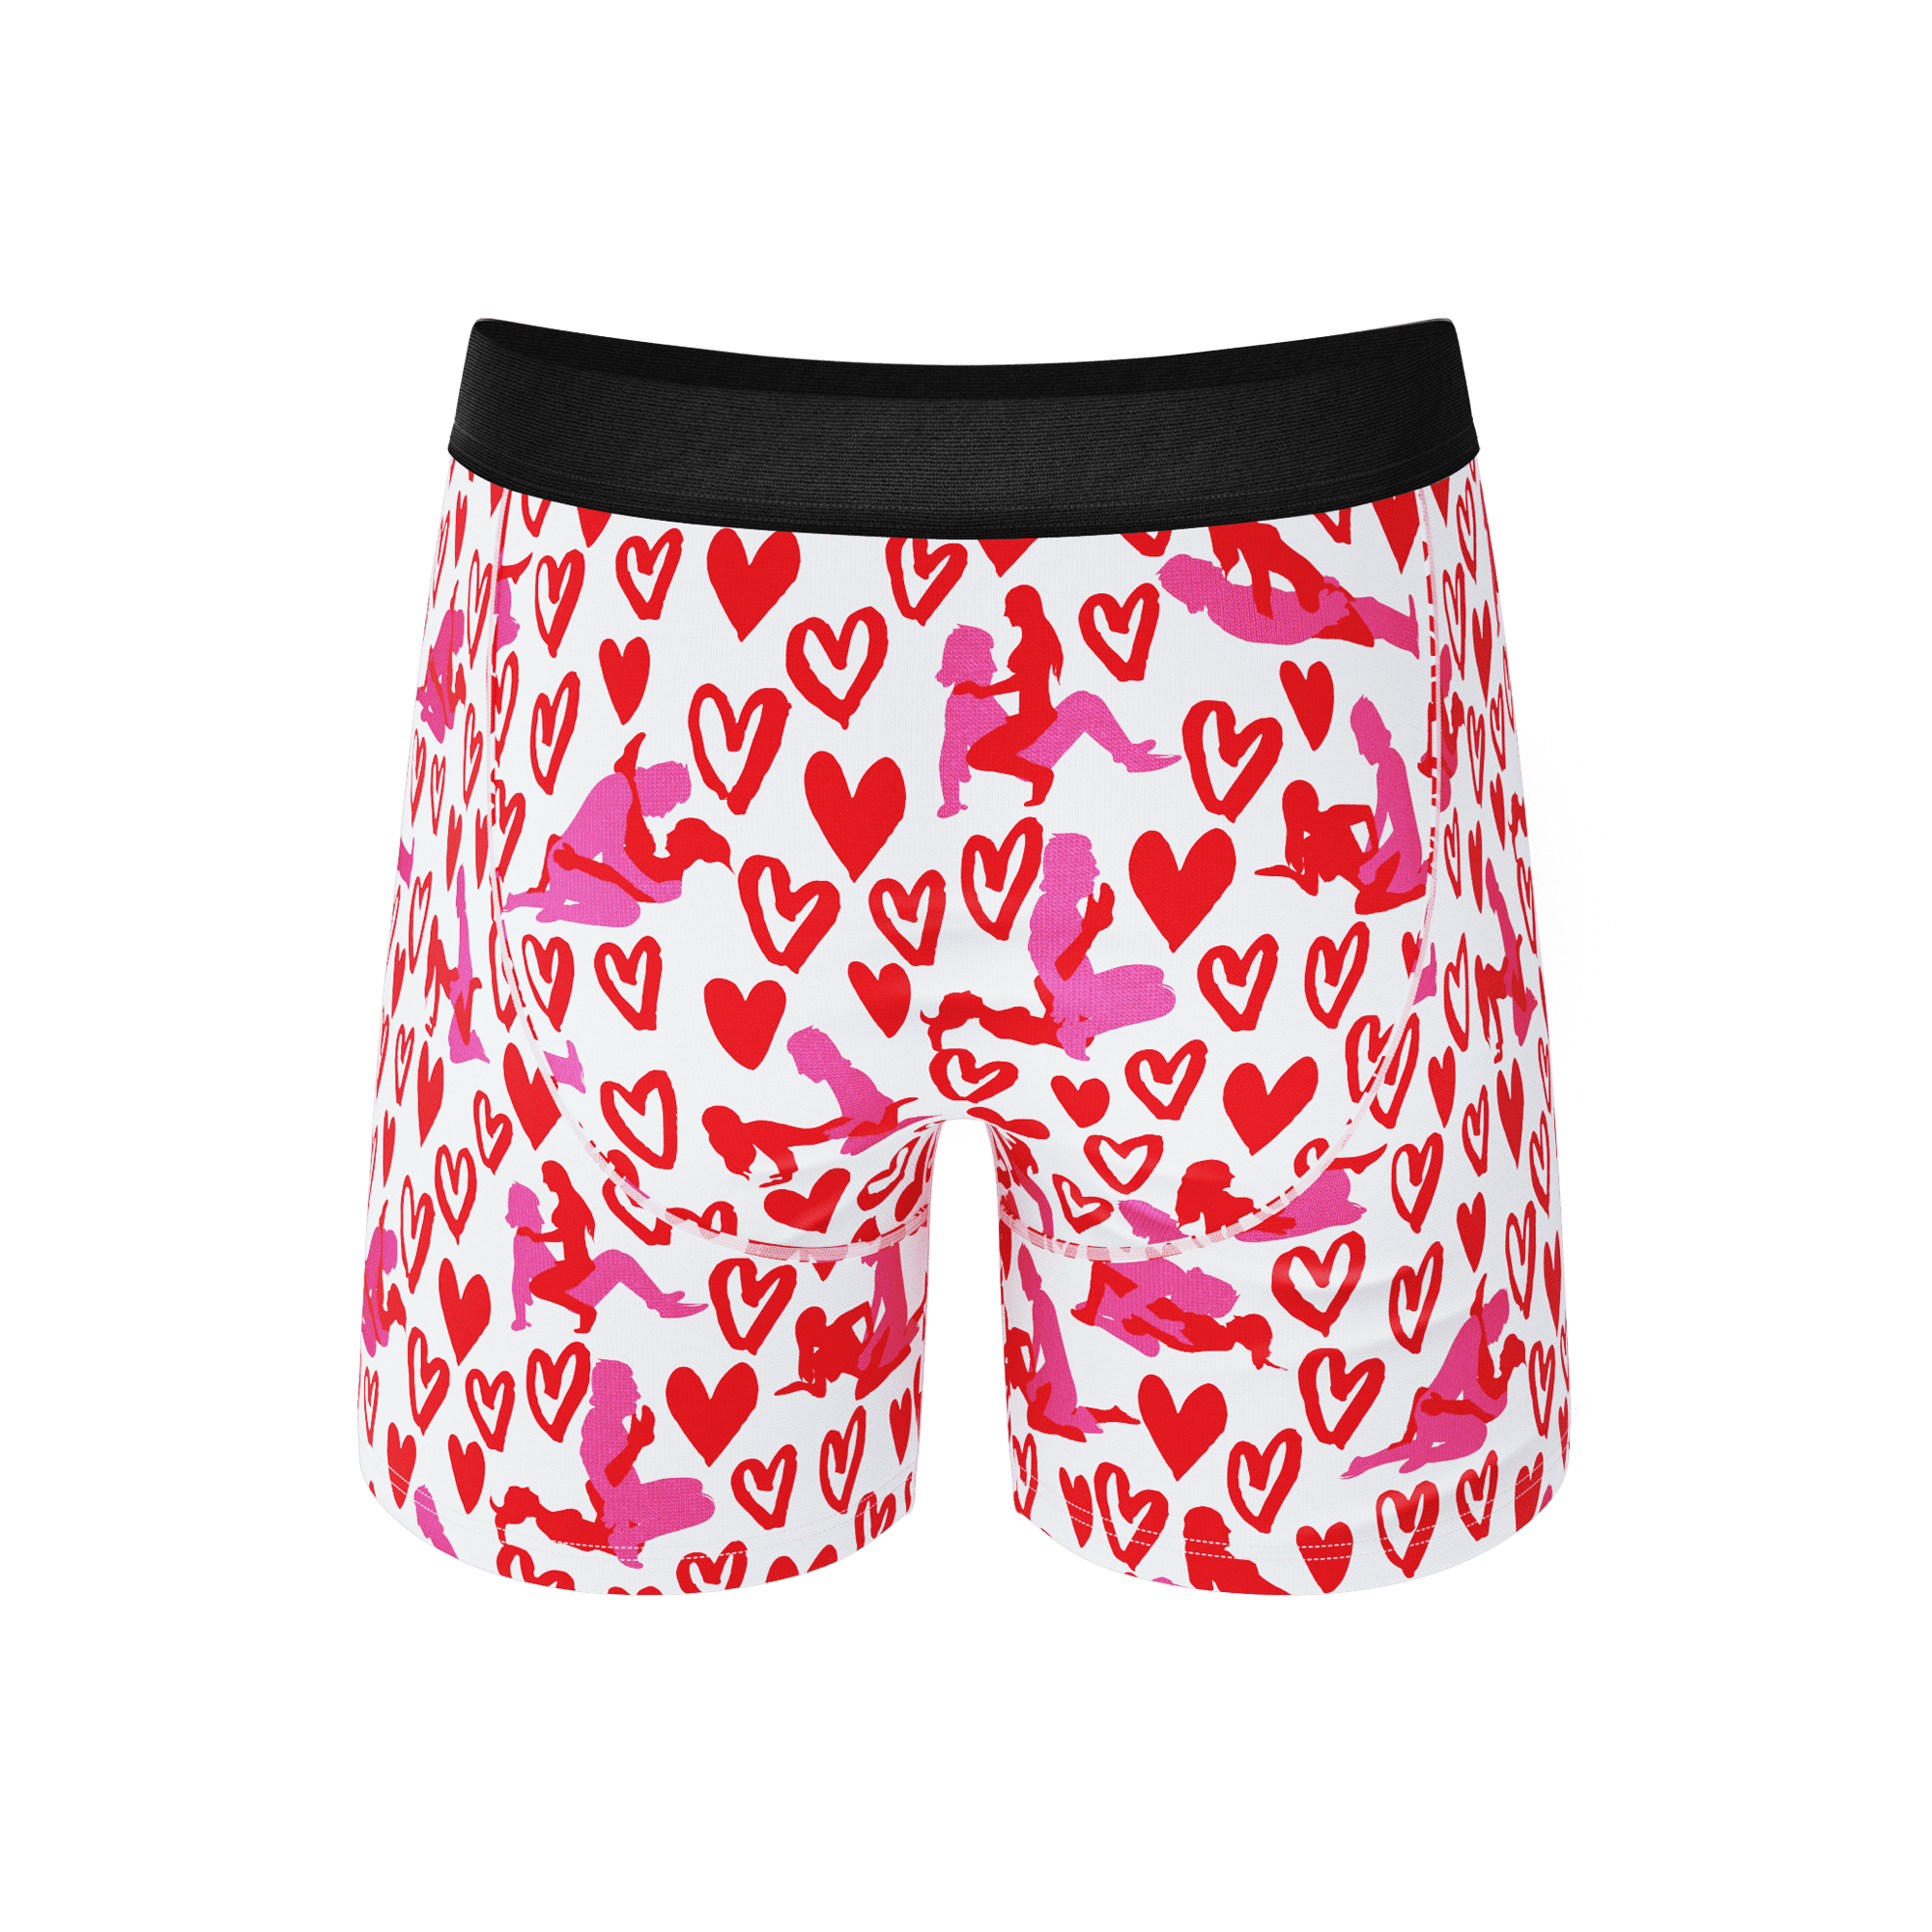 The Hot-Blooded Handbook - Shinesty Valentines Ball Hammock Pouch Underwear  3X 